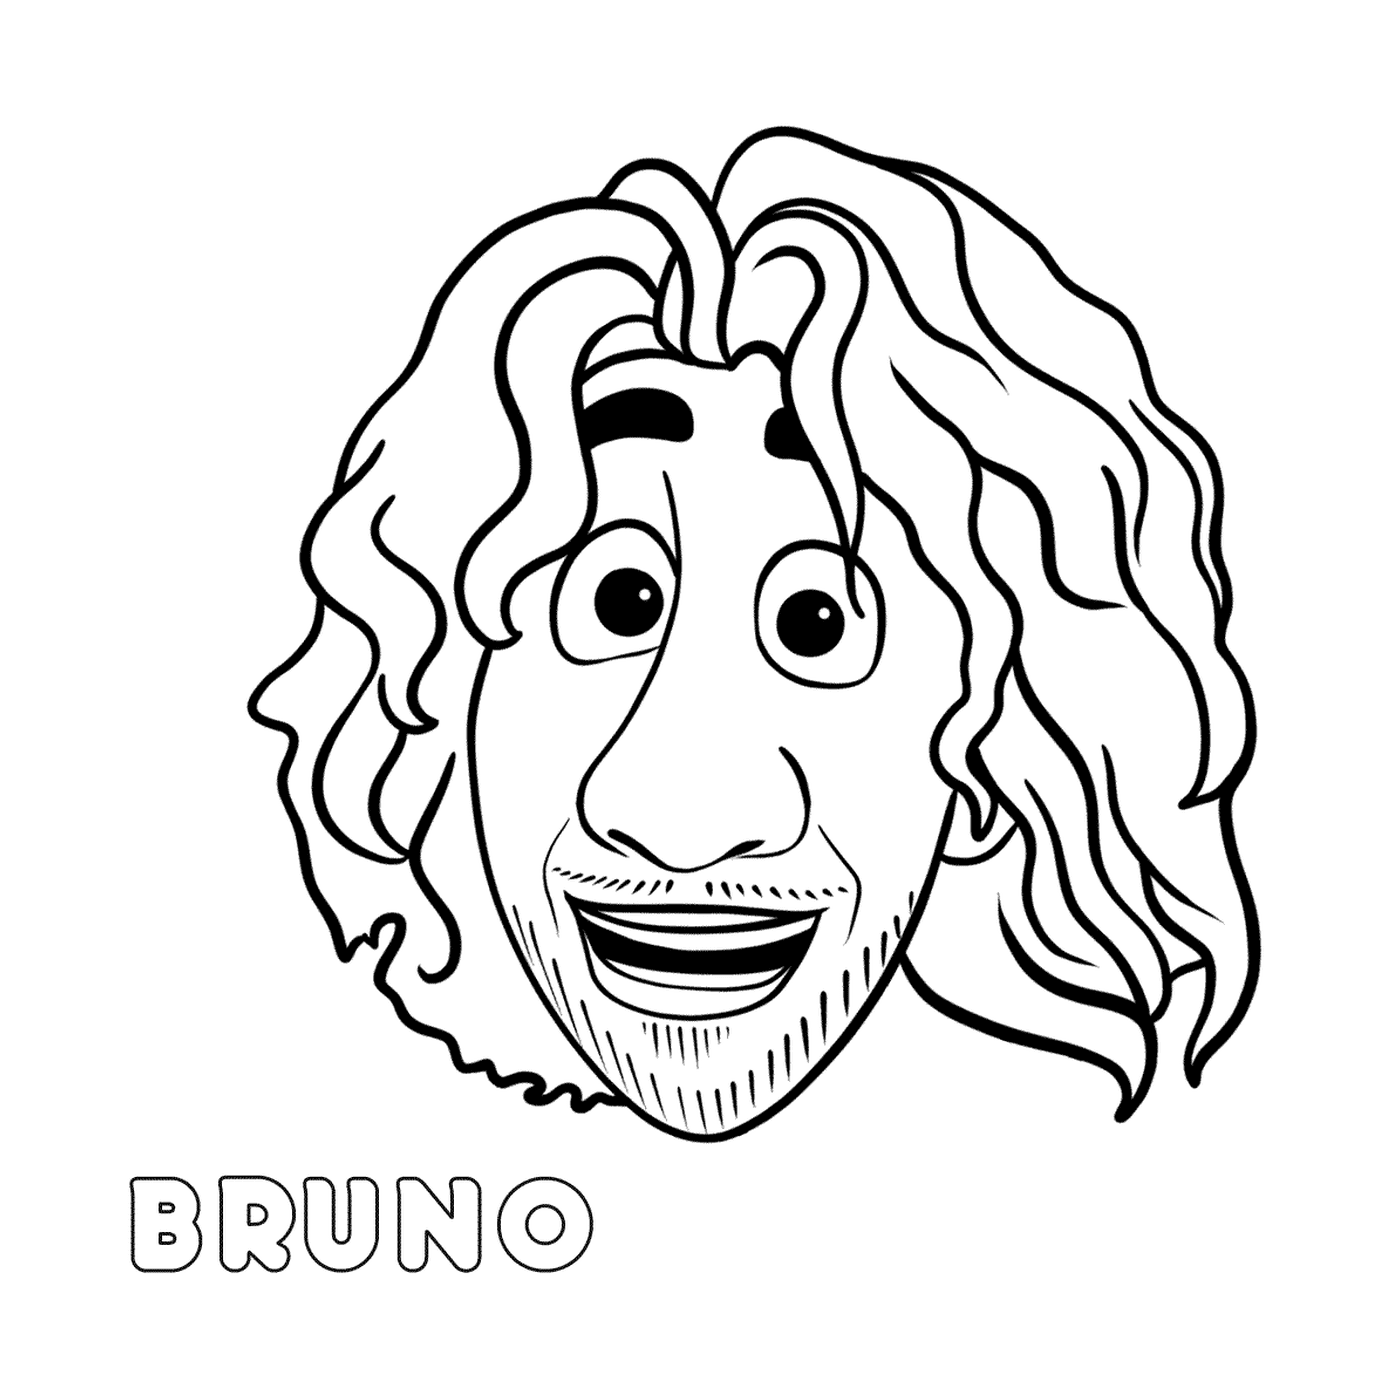   Visage de Bruno avec des cheveux longs 